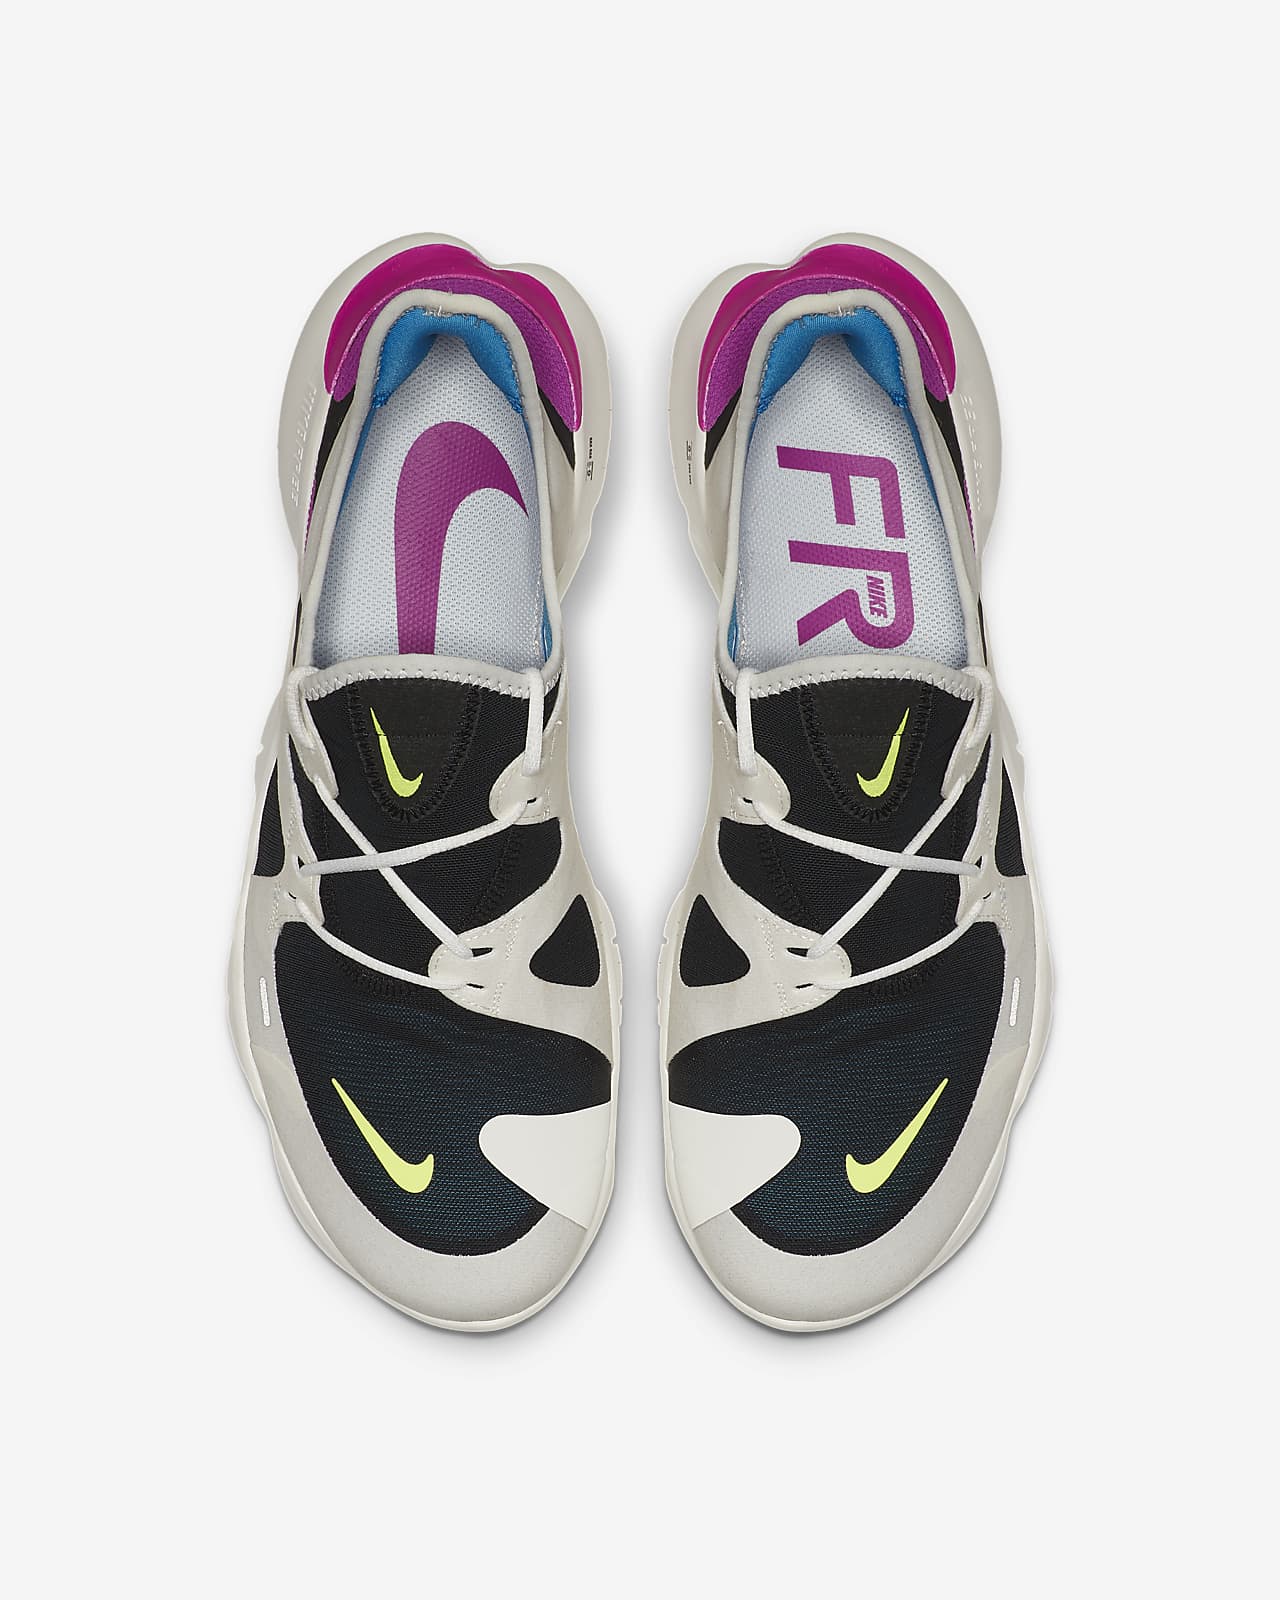 Nike Free RN 5.0 男款跑鞋。Nike TW